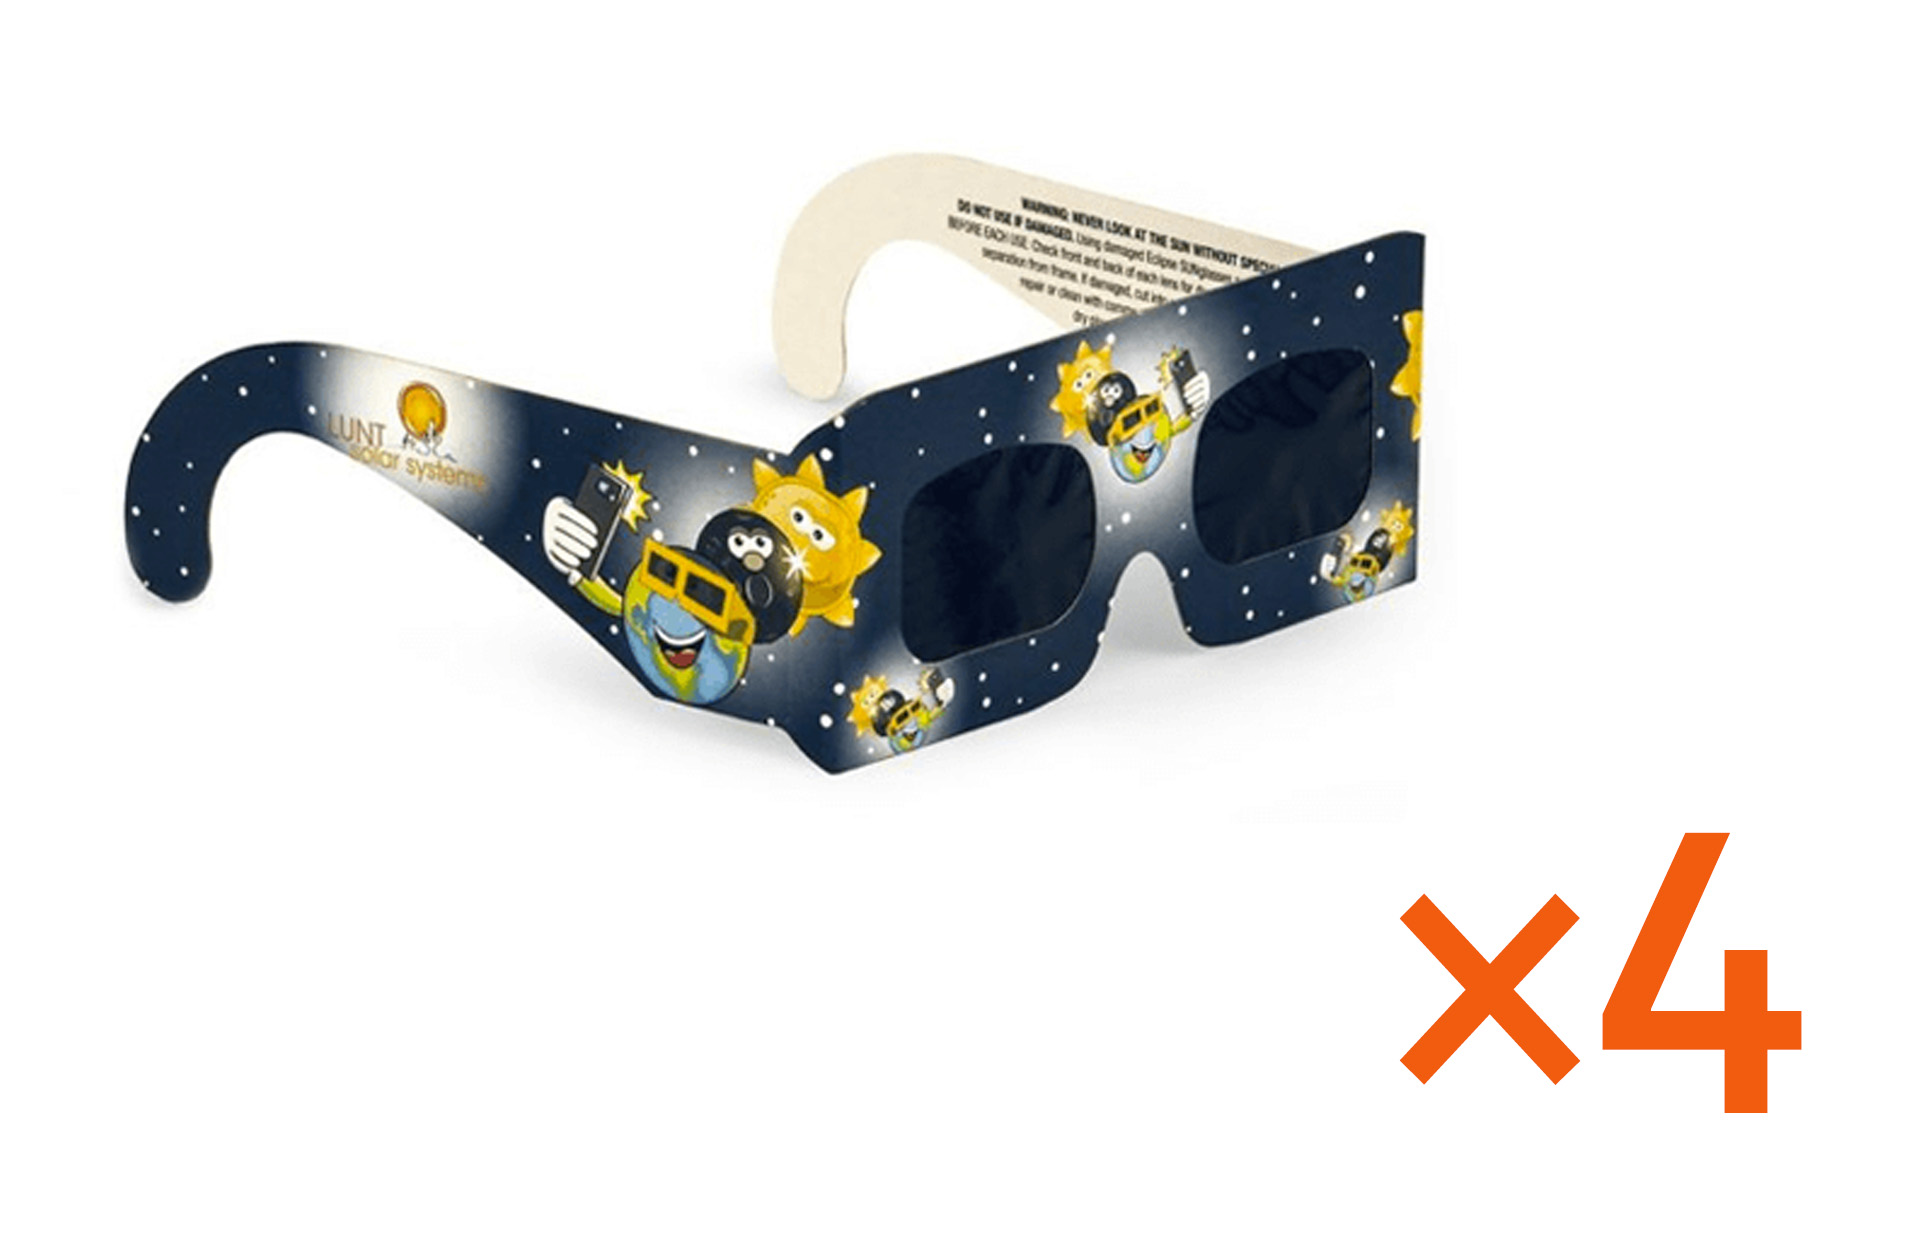 4 Pack Lunt Solar Premium Eclipse Glasses - Junior Sized ISO, CE Certified  in the USA- Crisp Solar Image - Premium Optical Film - Lunt Solar Systems